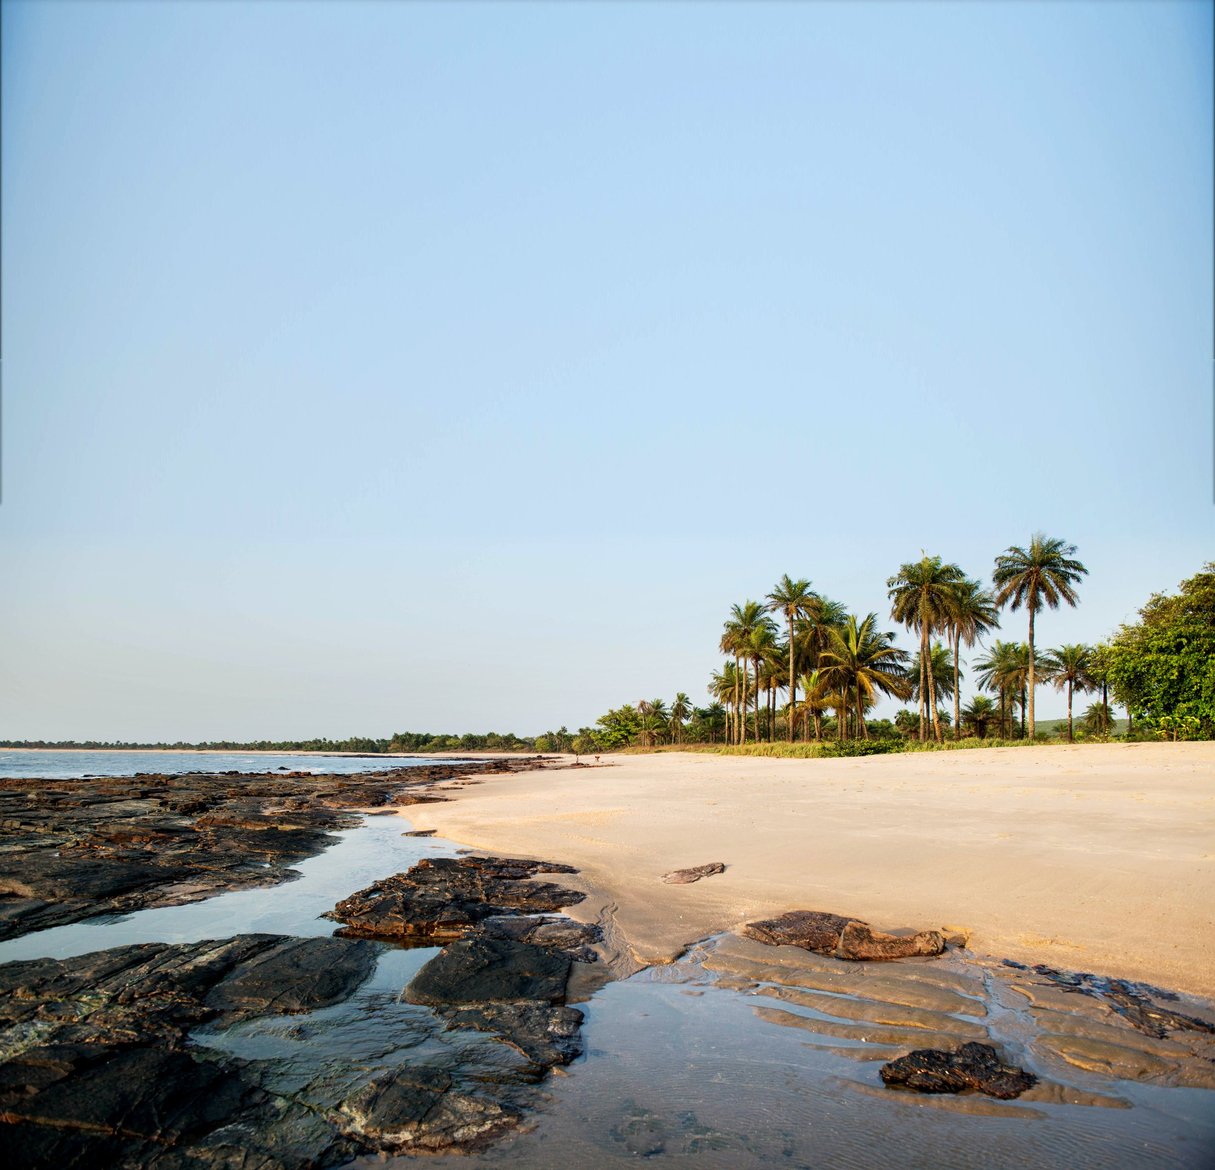 La plage de Bel-Air, une bande de sable fin de 7 km bordée de cocotiers. © Youri Lenquette